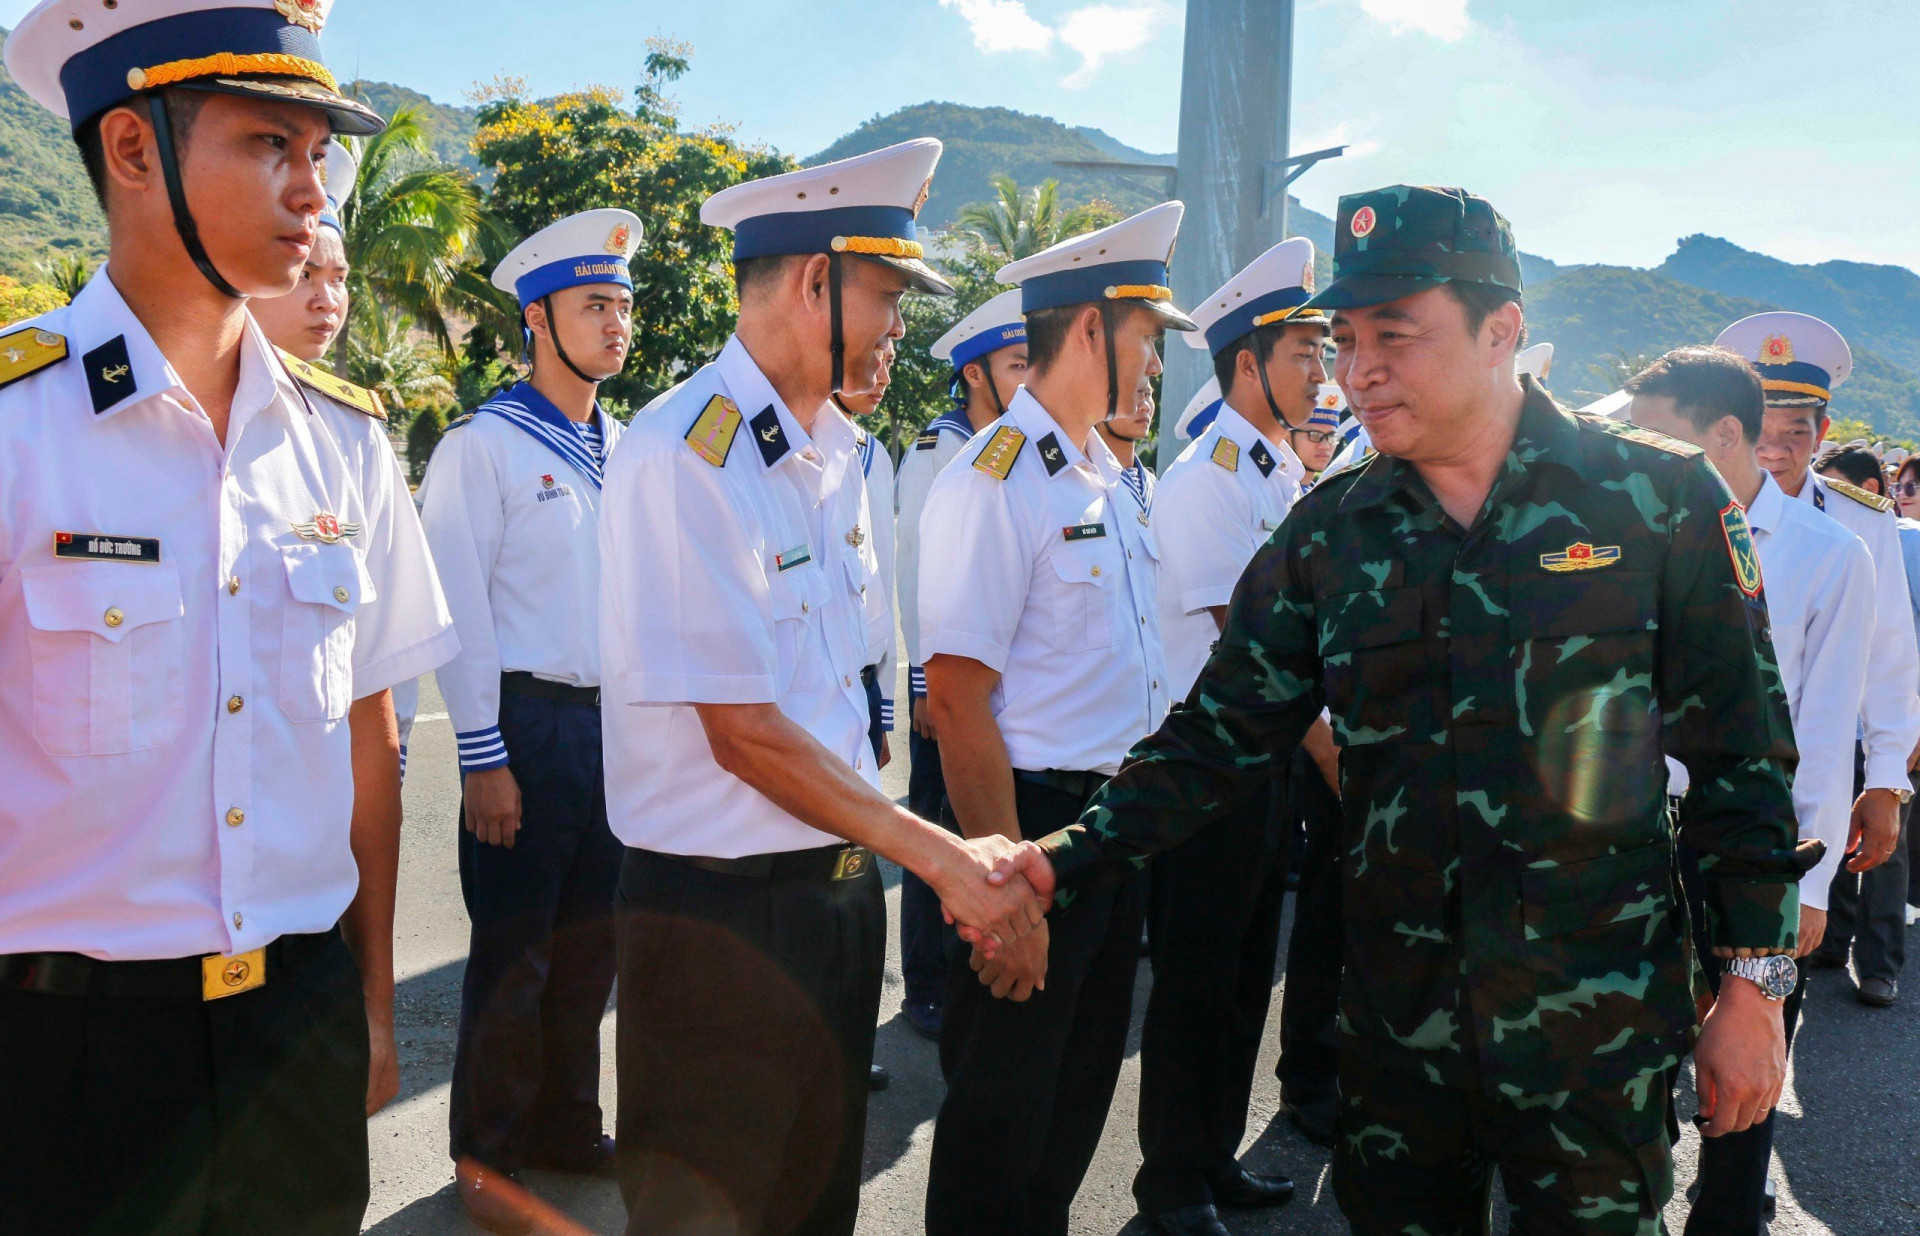 Đồng  chí  Nguyễn  Khắc  Toàn  bắt tay động viên các chiến sĩ trước  giờ lên tàu